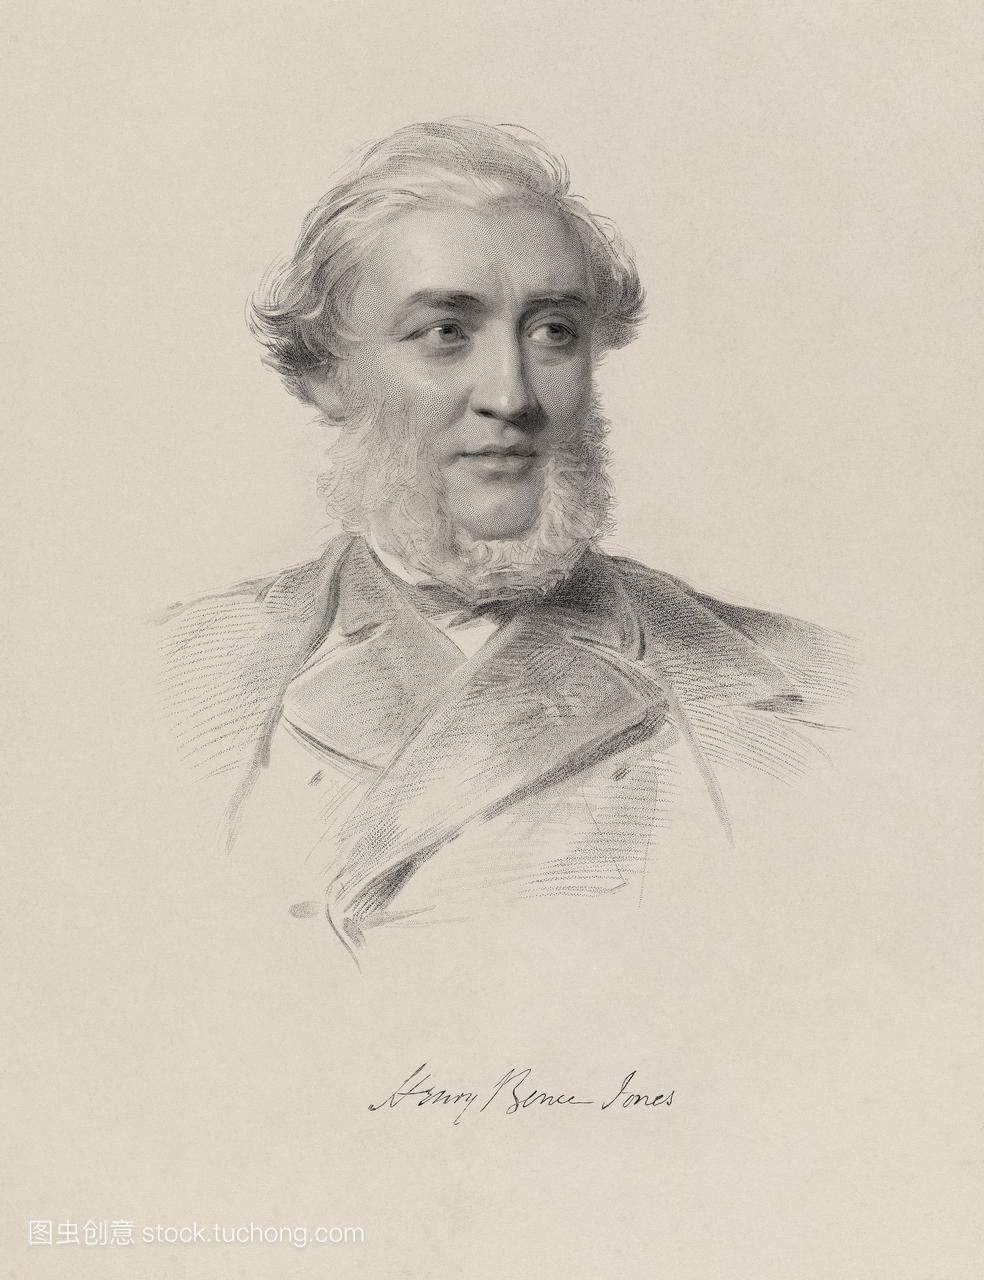 亨利·布伦斯·琼斯1813-1873,英国化学家。